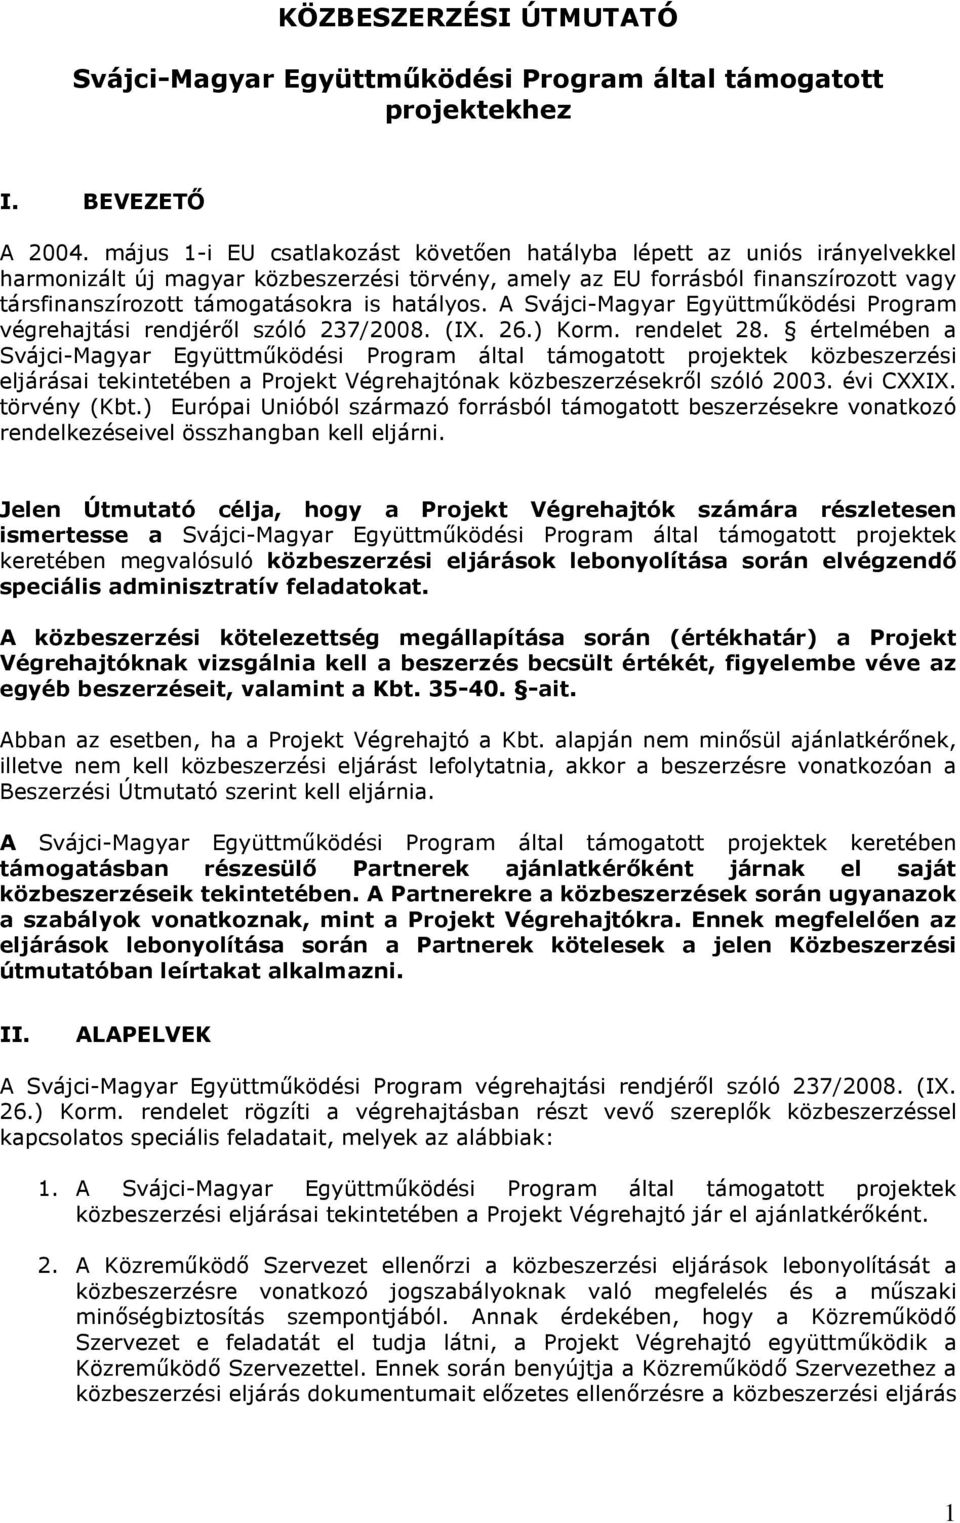 hatályos. A Svájci-Magyar Együttmőködési Program végrehajtási rendjérıl szóló 237/2008. (IX. 26.) Korm. rendelet 28.